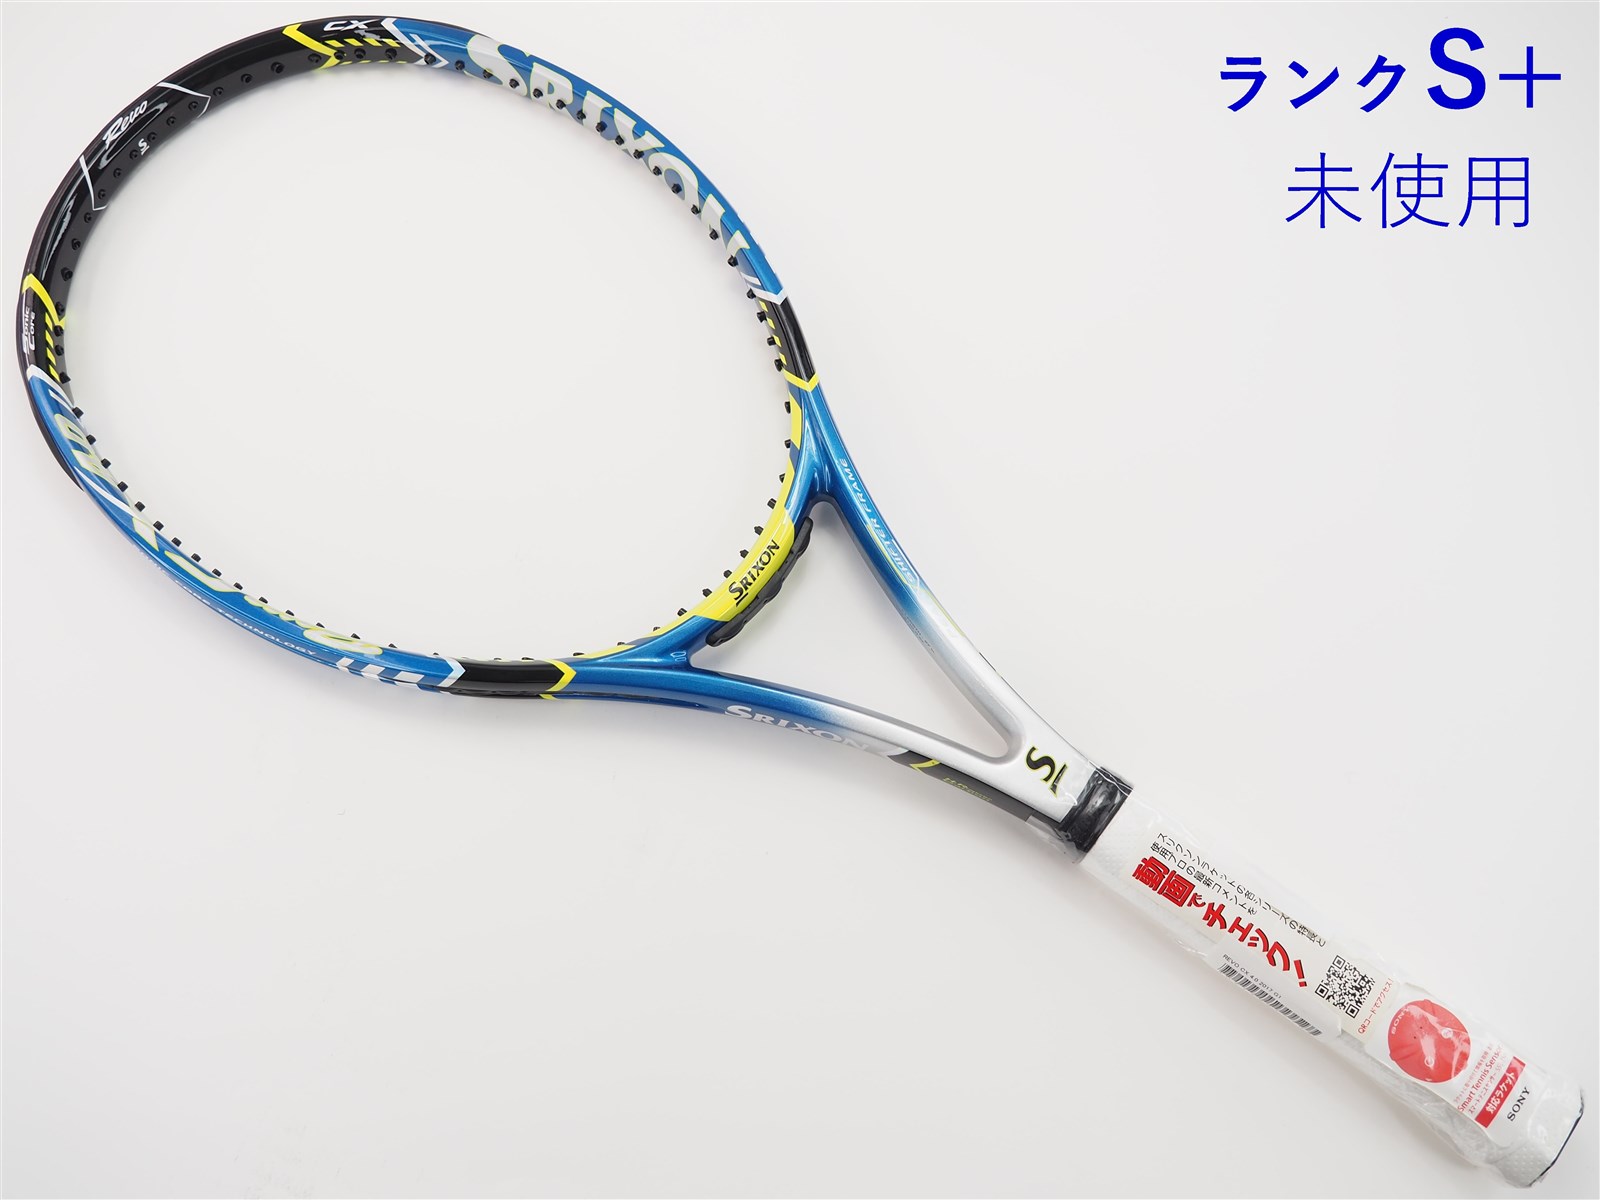 テニスラケット スリクソン レヴォ シーエックス 2.0 ツアー 2015年モデル (G3)SRIXON REVO CX 2.0 TOUR 201595平方インチ長さ